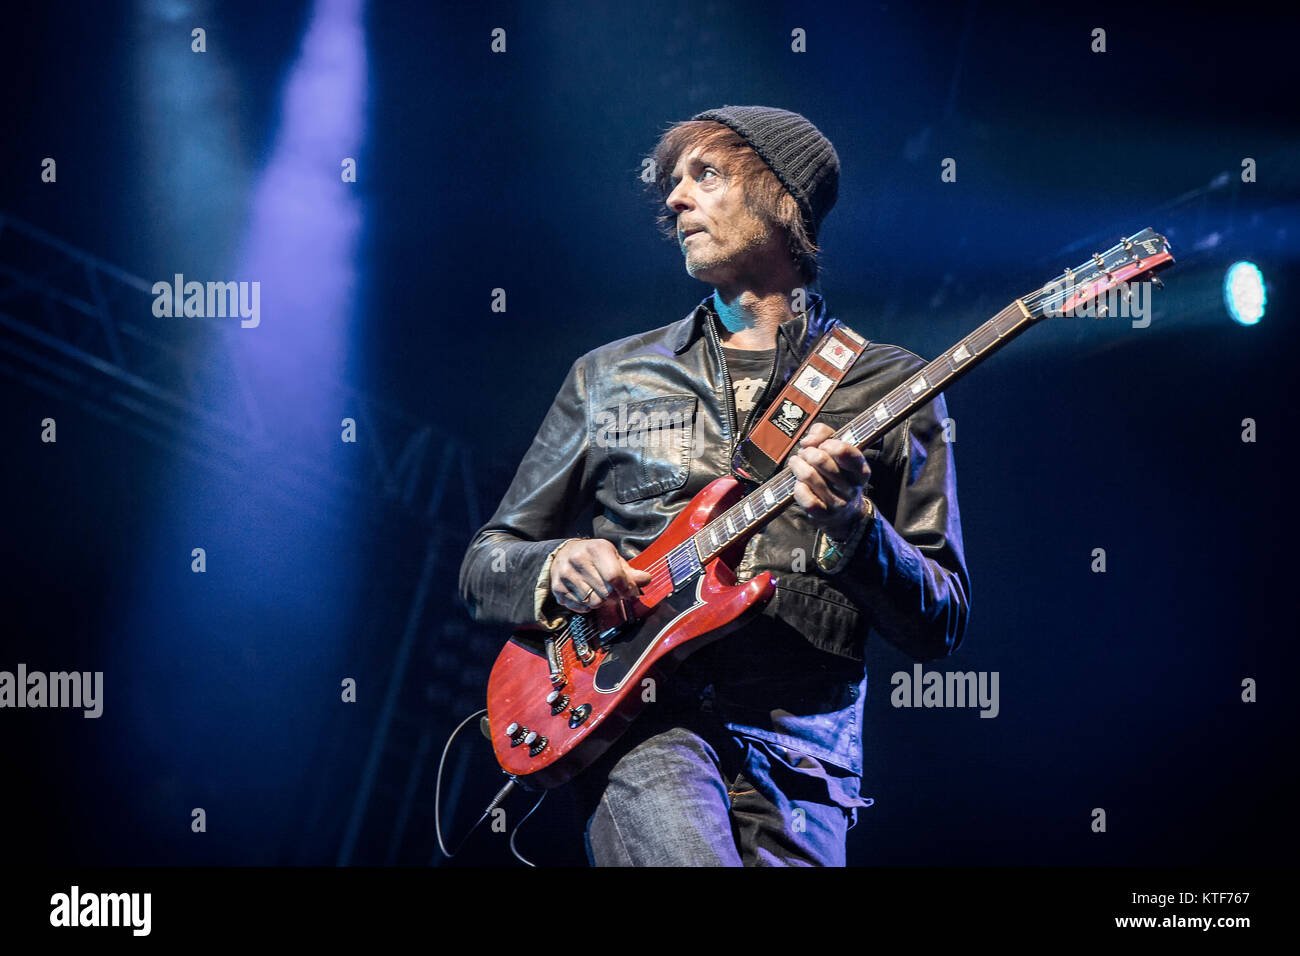 Die norwegische pop-rock Gruppe A-ha führt ein Live Konzert in Oslo Spektrum in Oslo. Hier Gitarrist Paul Waaktaar-Savoy wird gesehen, live auf der Bühne. Norwegen, 30/04 2016. Stockfoto